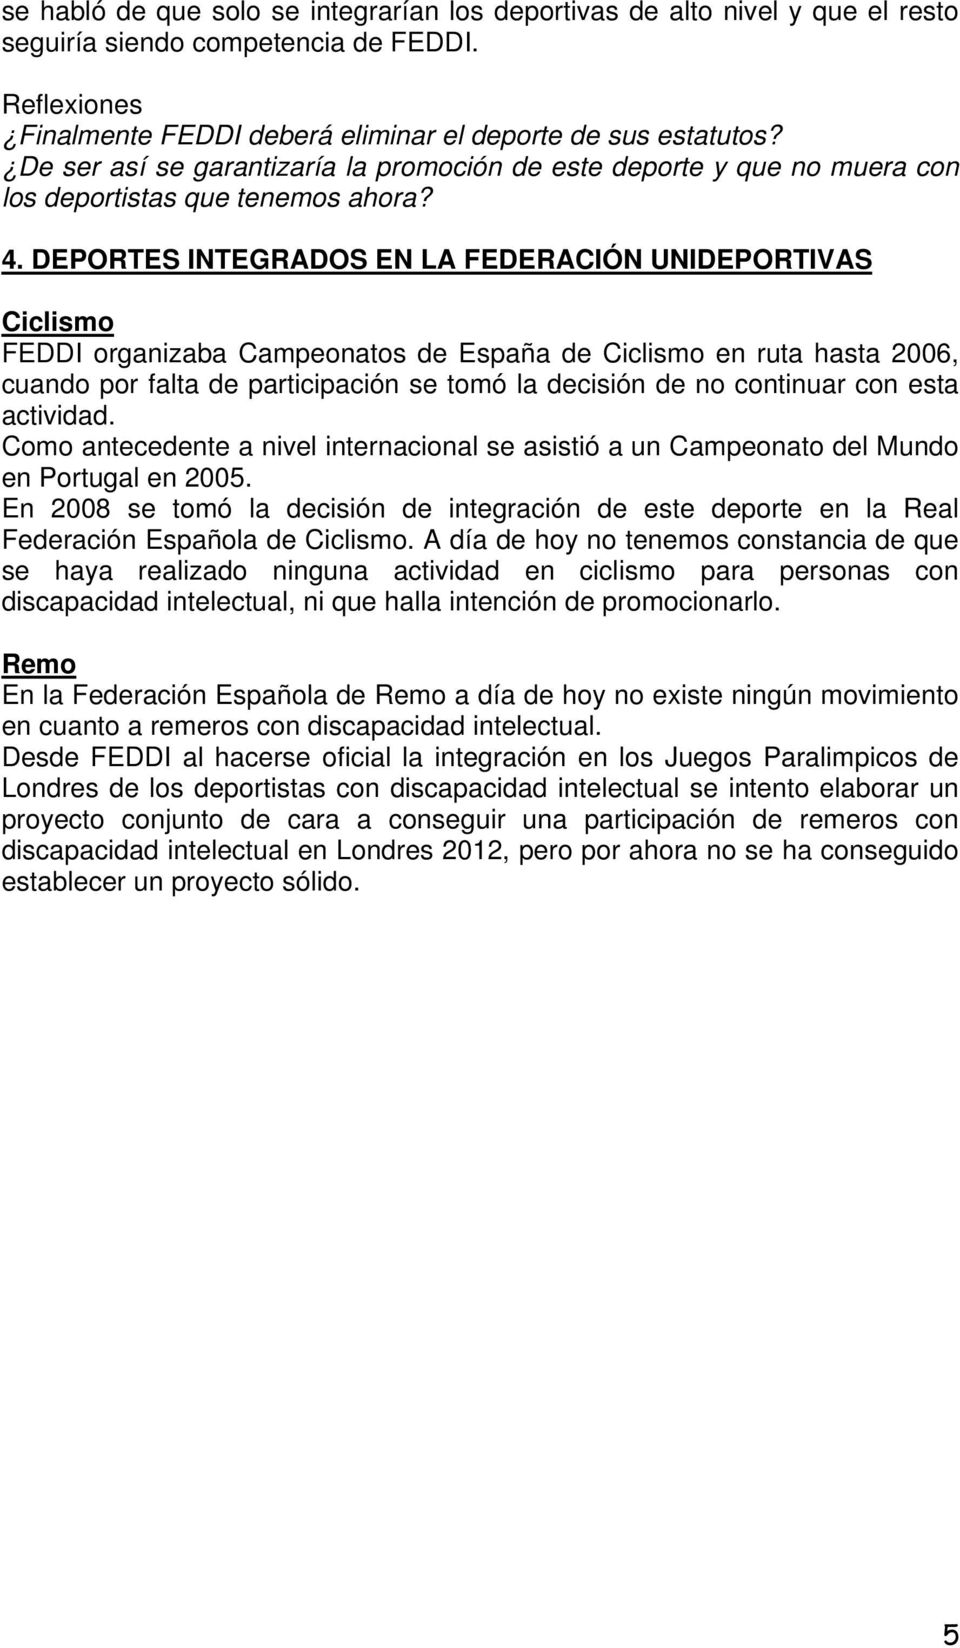 DEPORTES INTEGRADOS EN LA FEDERACIÓN UNIDEPORTIVAS Ciclismo FEDDI organizaba Campeonatos de España de Ciclismo en ruta hasta 2006, cuando por falta de participación se tomó la decisión de no